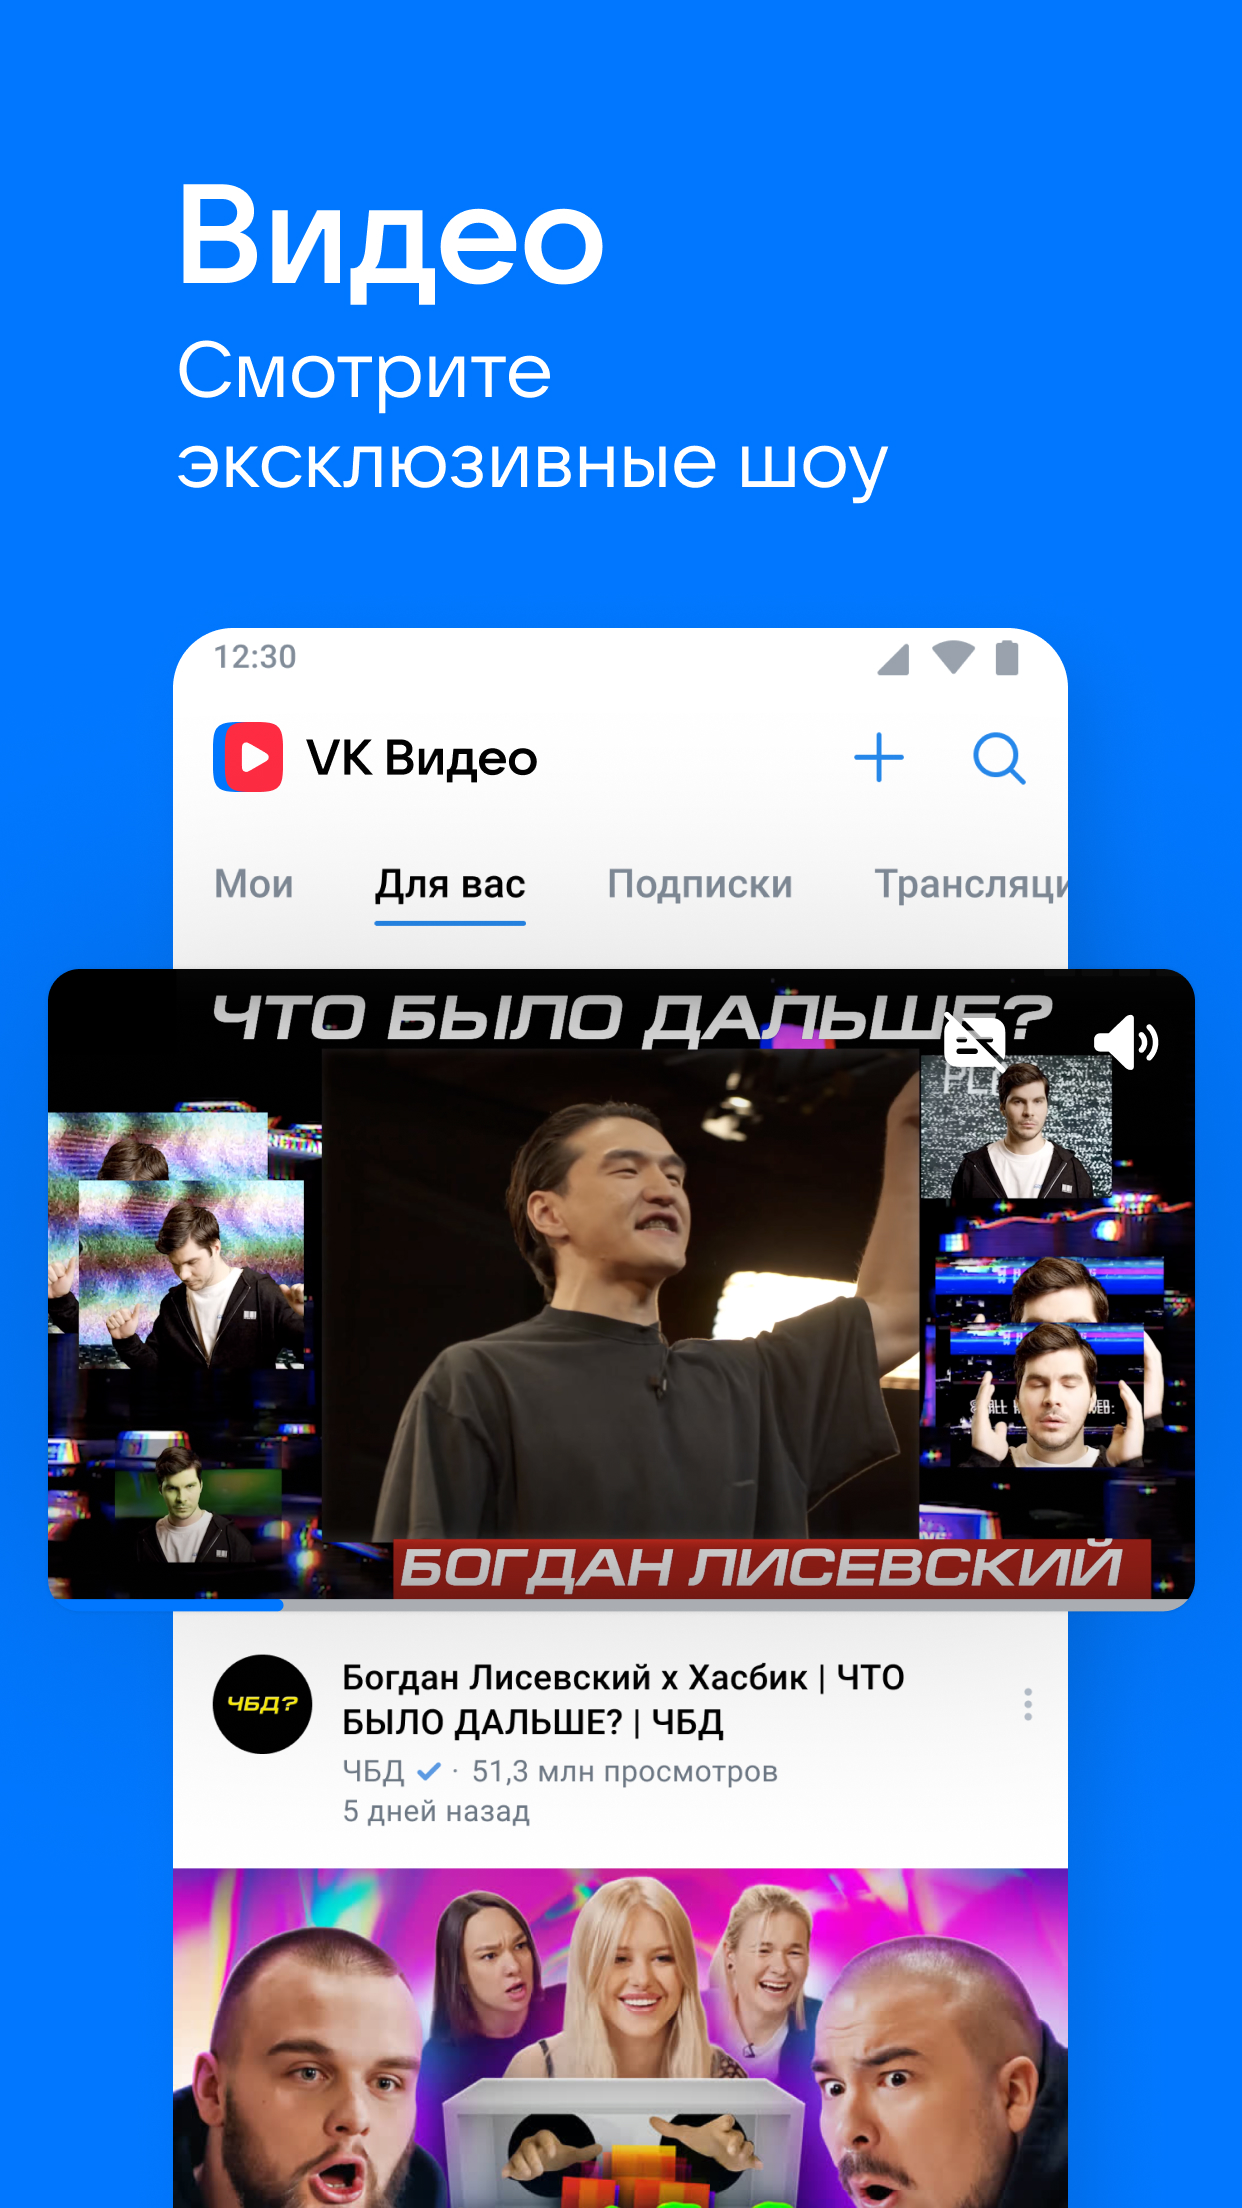 Скачать музыку из «ВКонтакте» бесплатно больше нельзя. Что делать? | Журнал Digital World